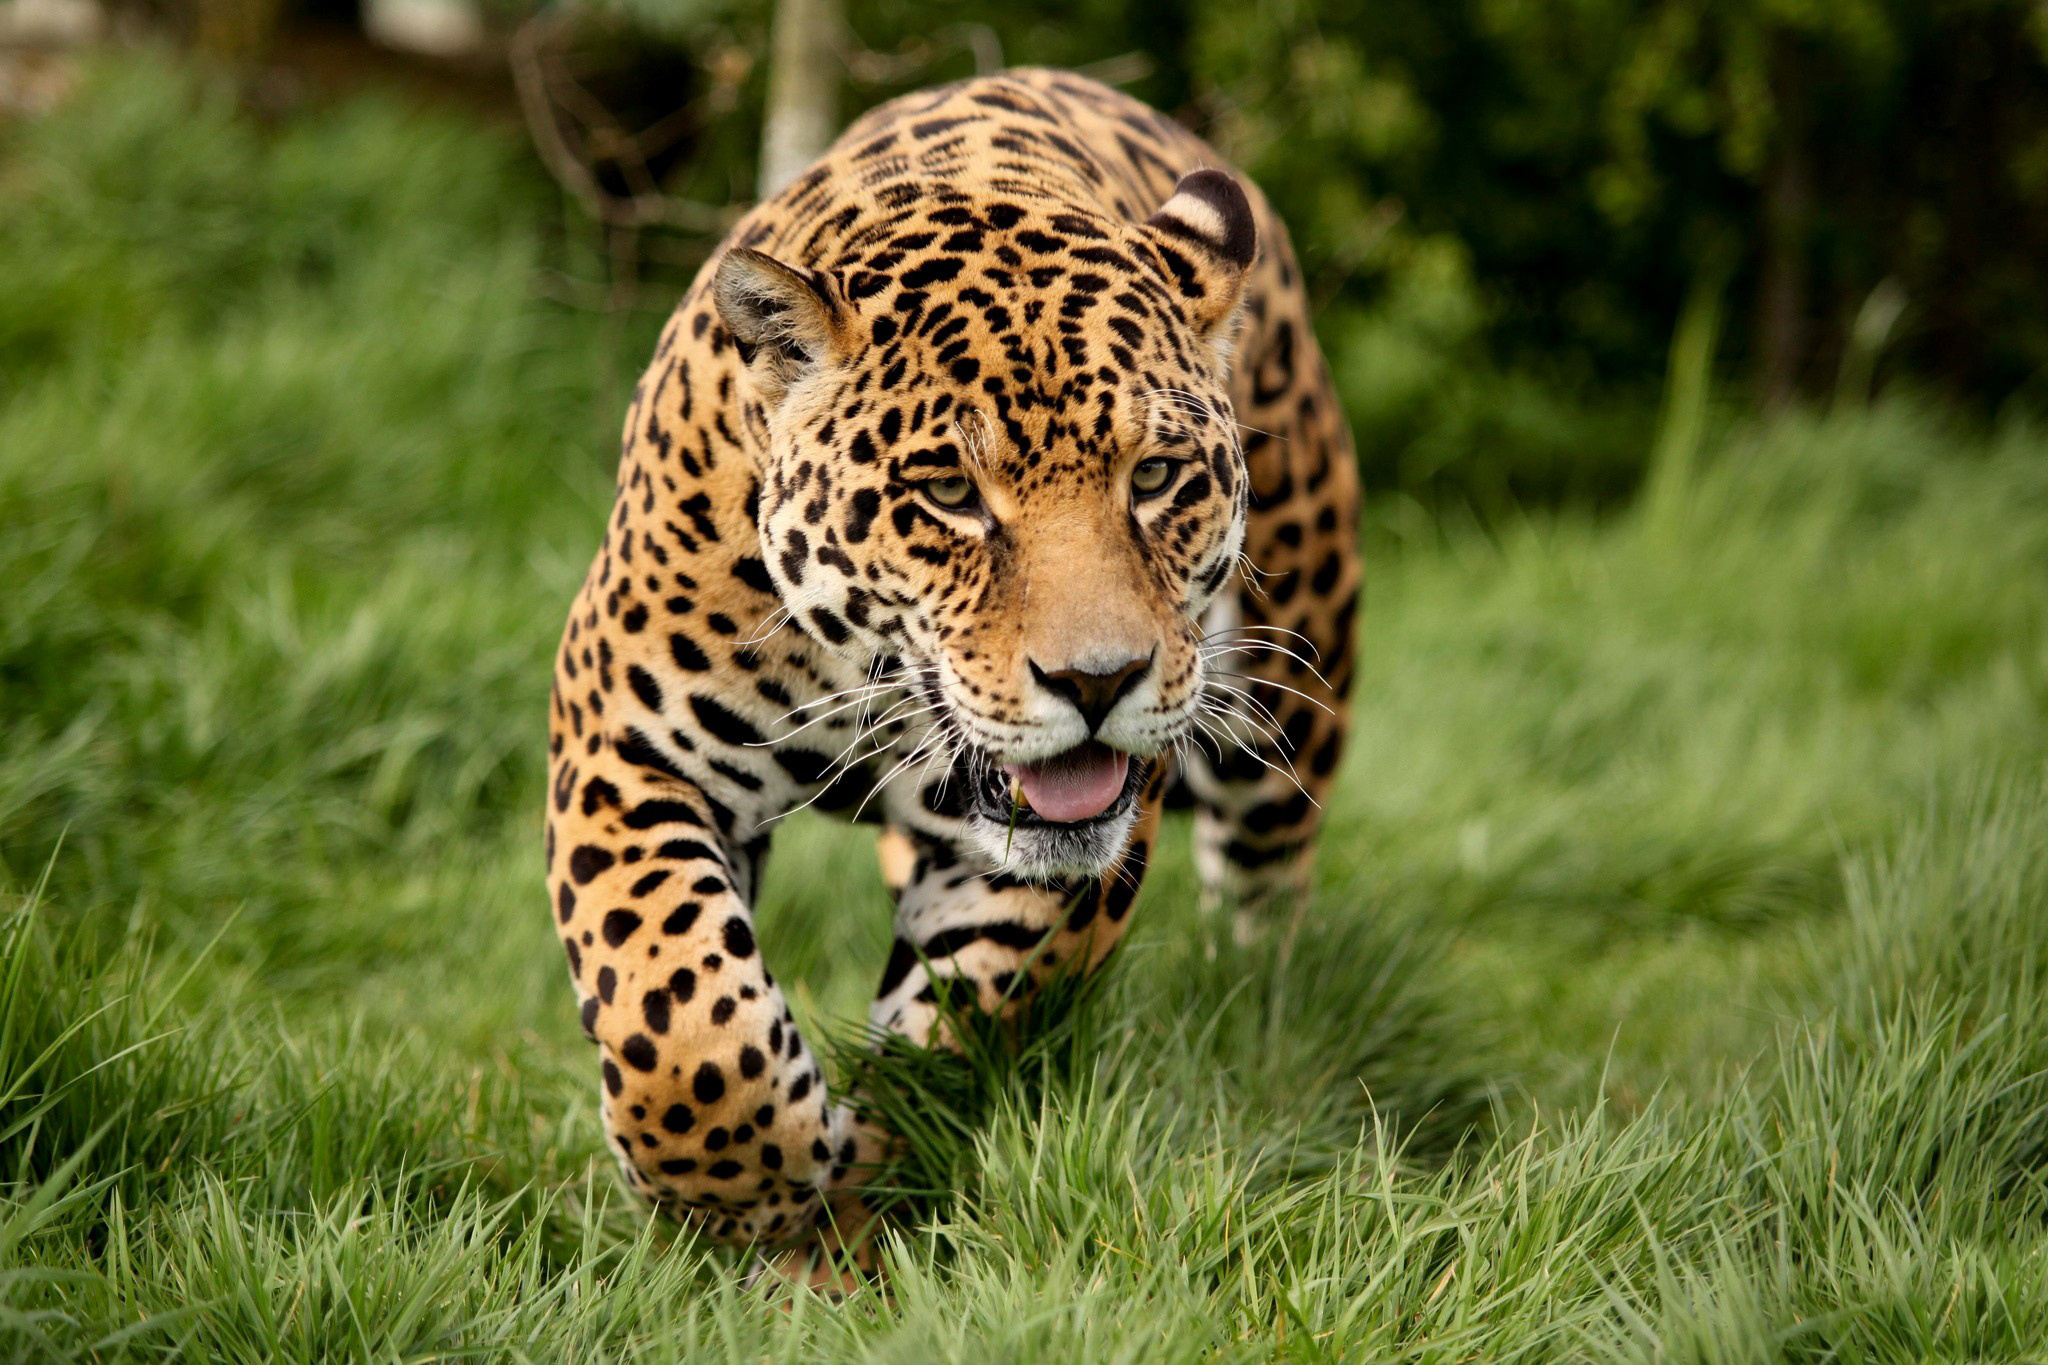 Big jpg image. Ягуар и леопард. Ягуар животное. Красивые животные. Ягуар в природе.